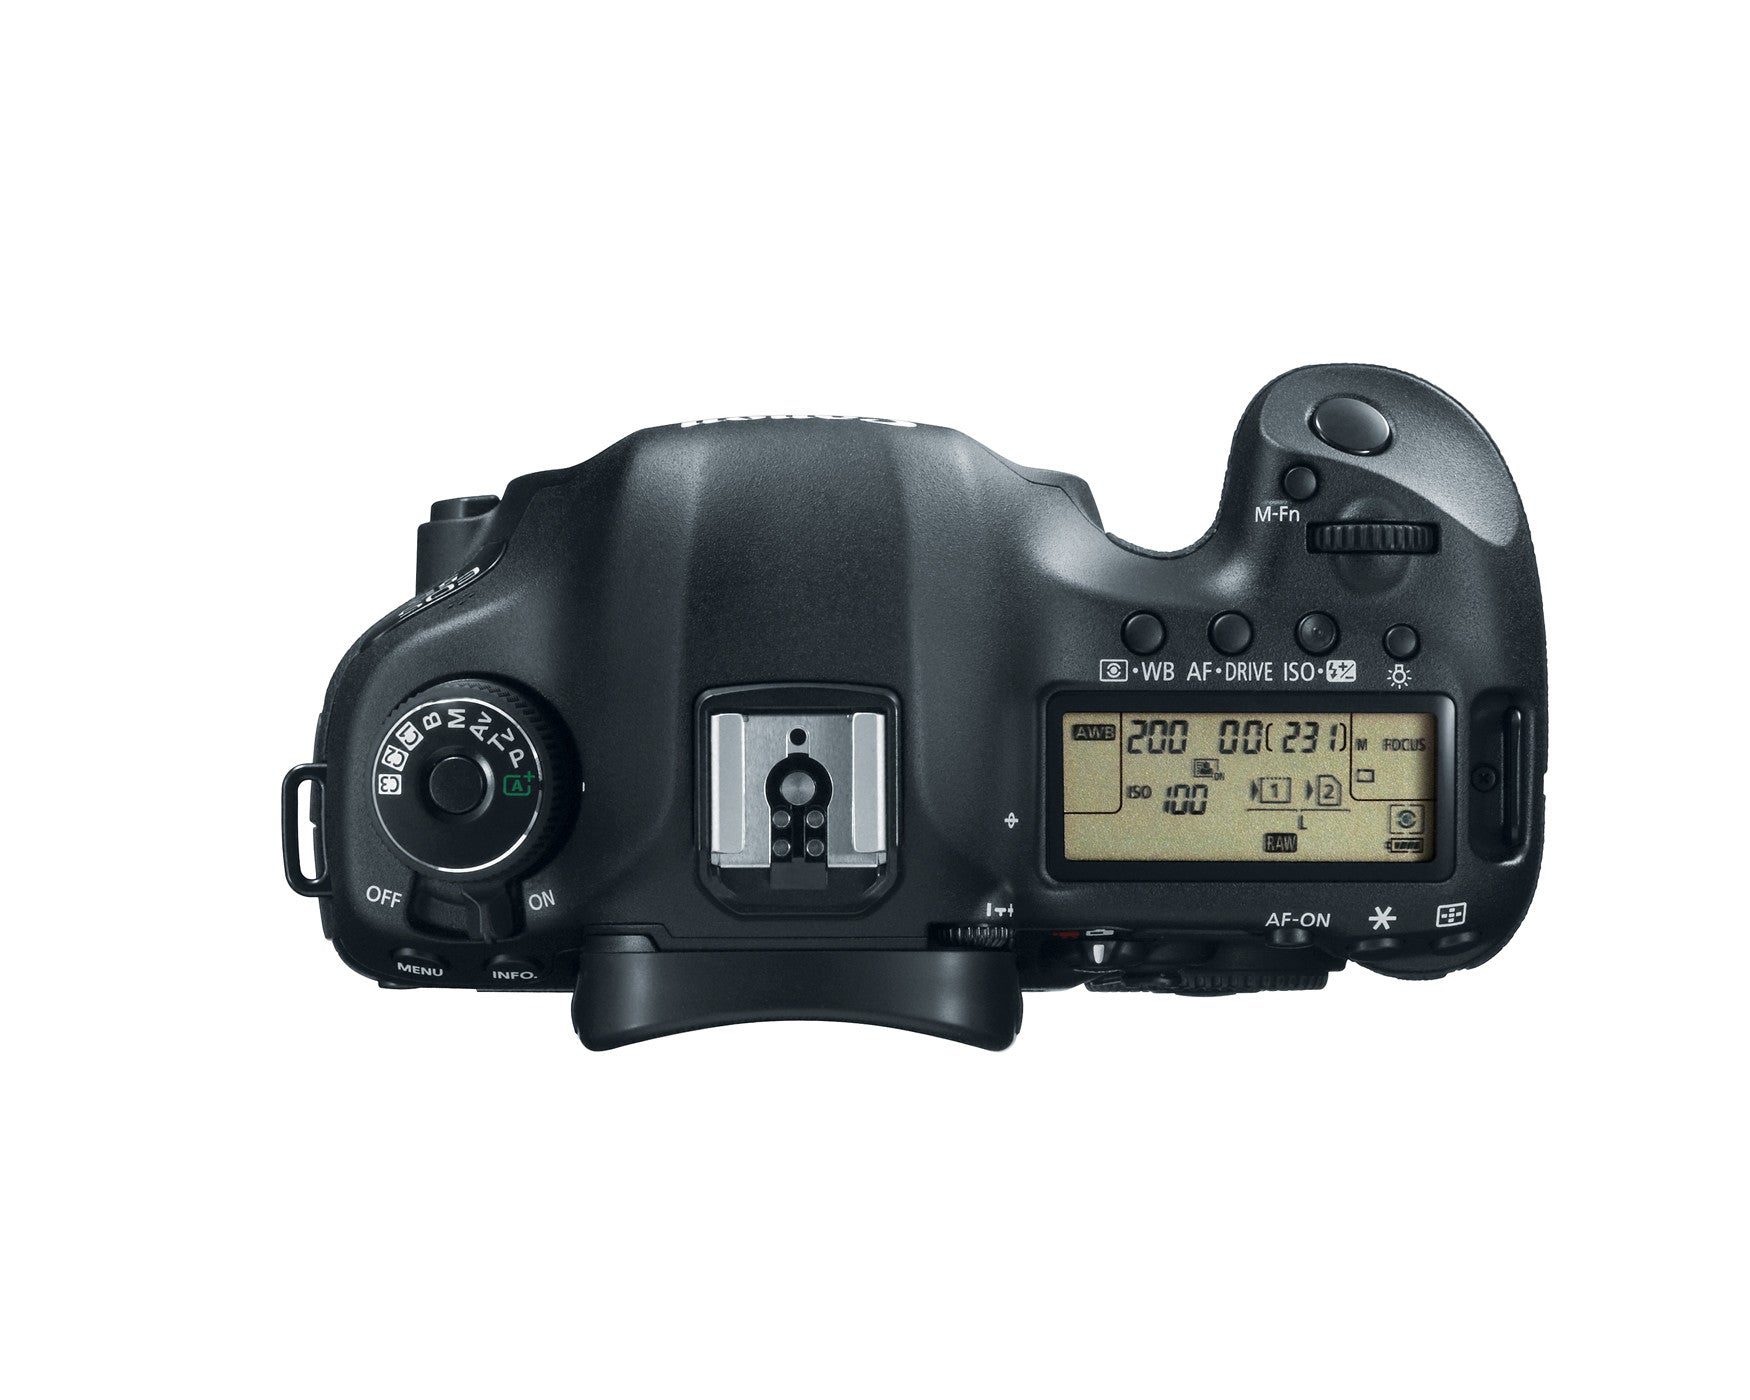 Canon EOS 5D Mark III Digital Camera Body Kit, camera dslr cameras, Canon - Pictureline  - 2